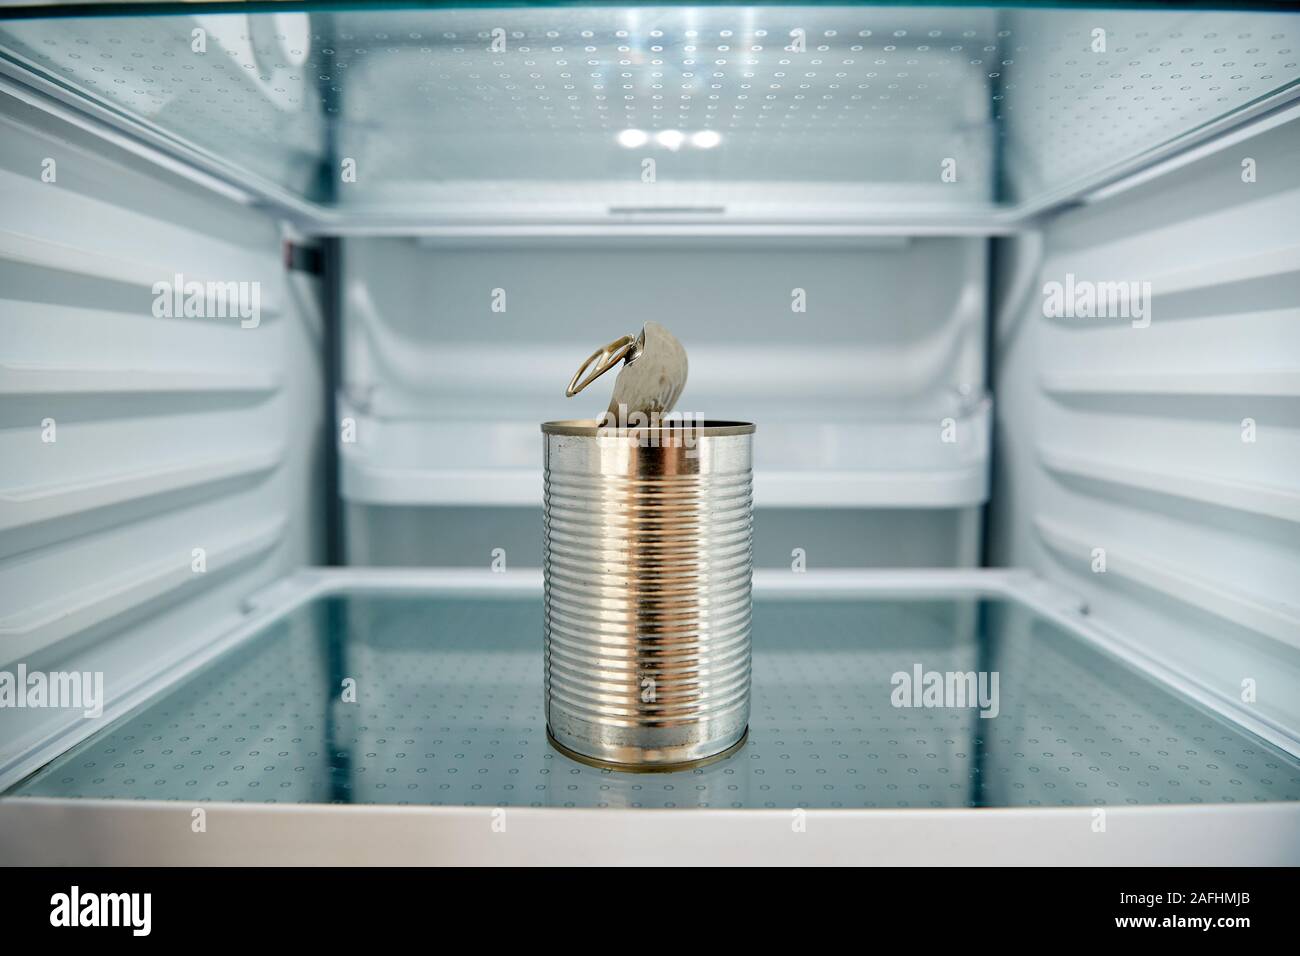 Vista mirando dentro del refrigerador vacío salvo para abrir la lata de estaño en la estantería Foto de stock